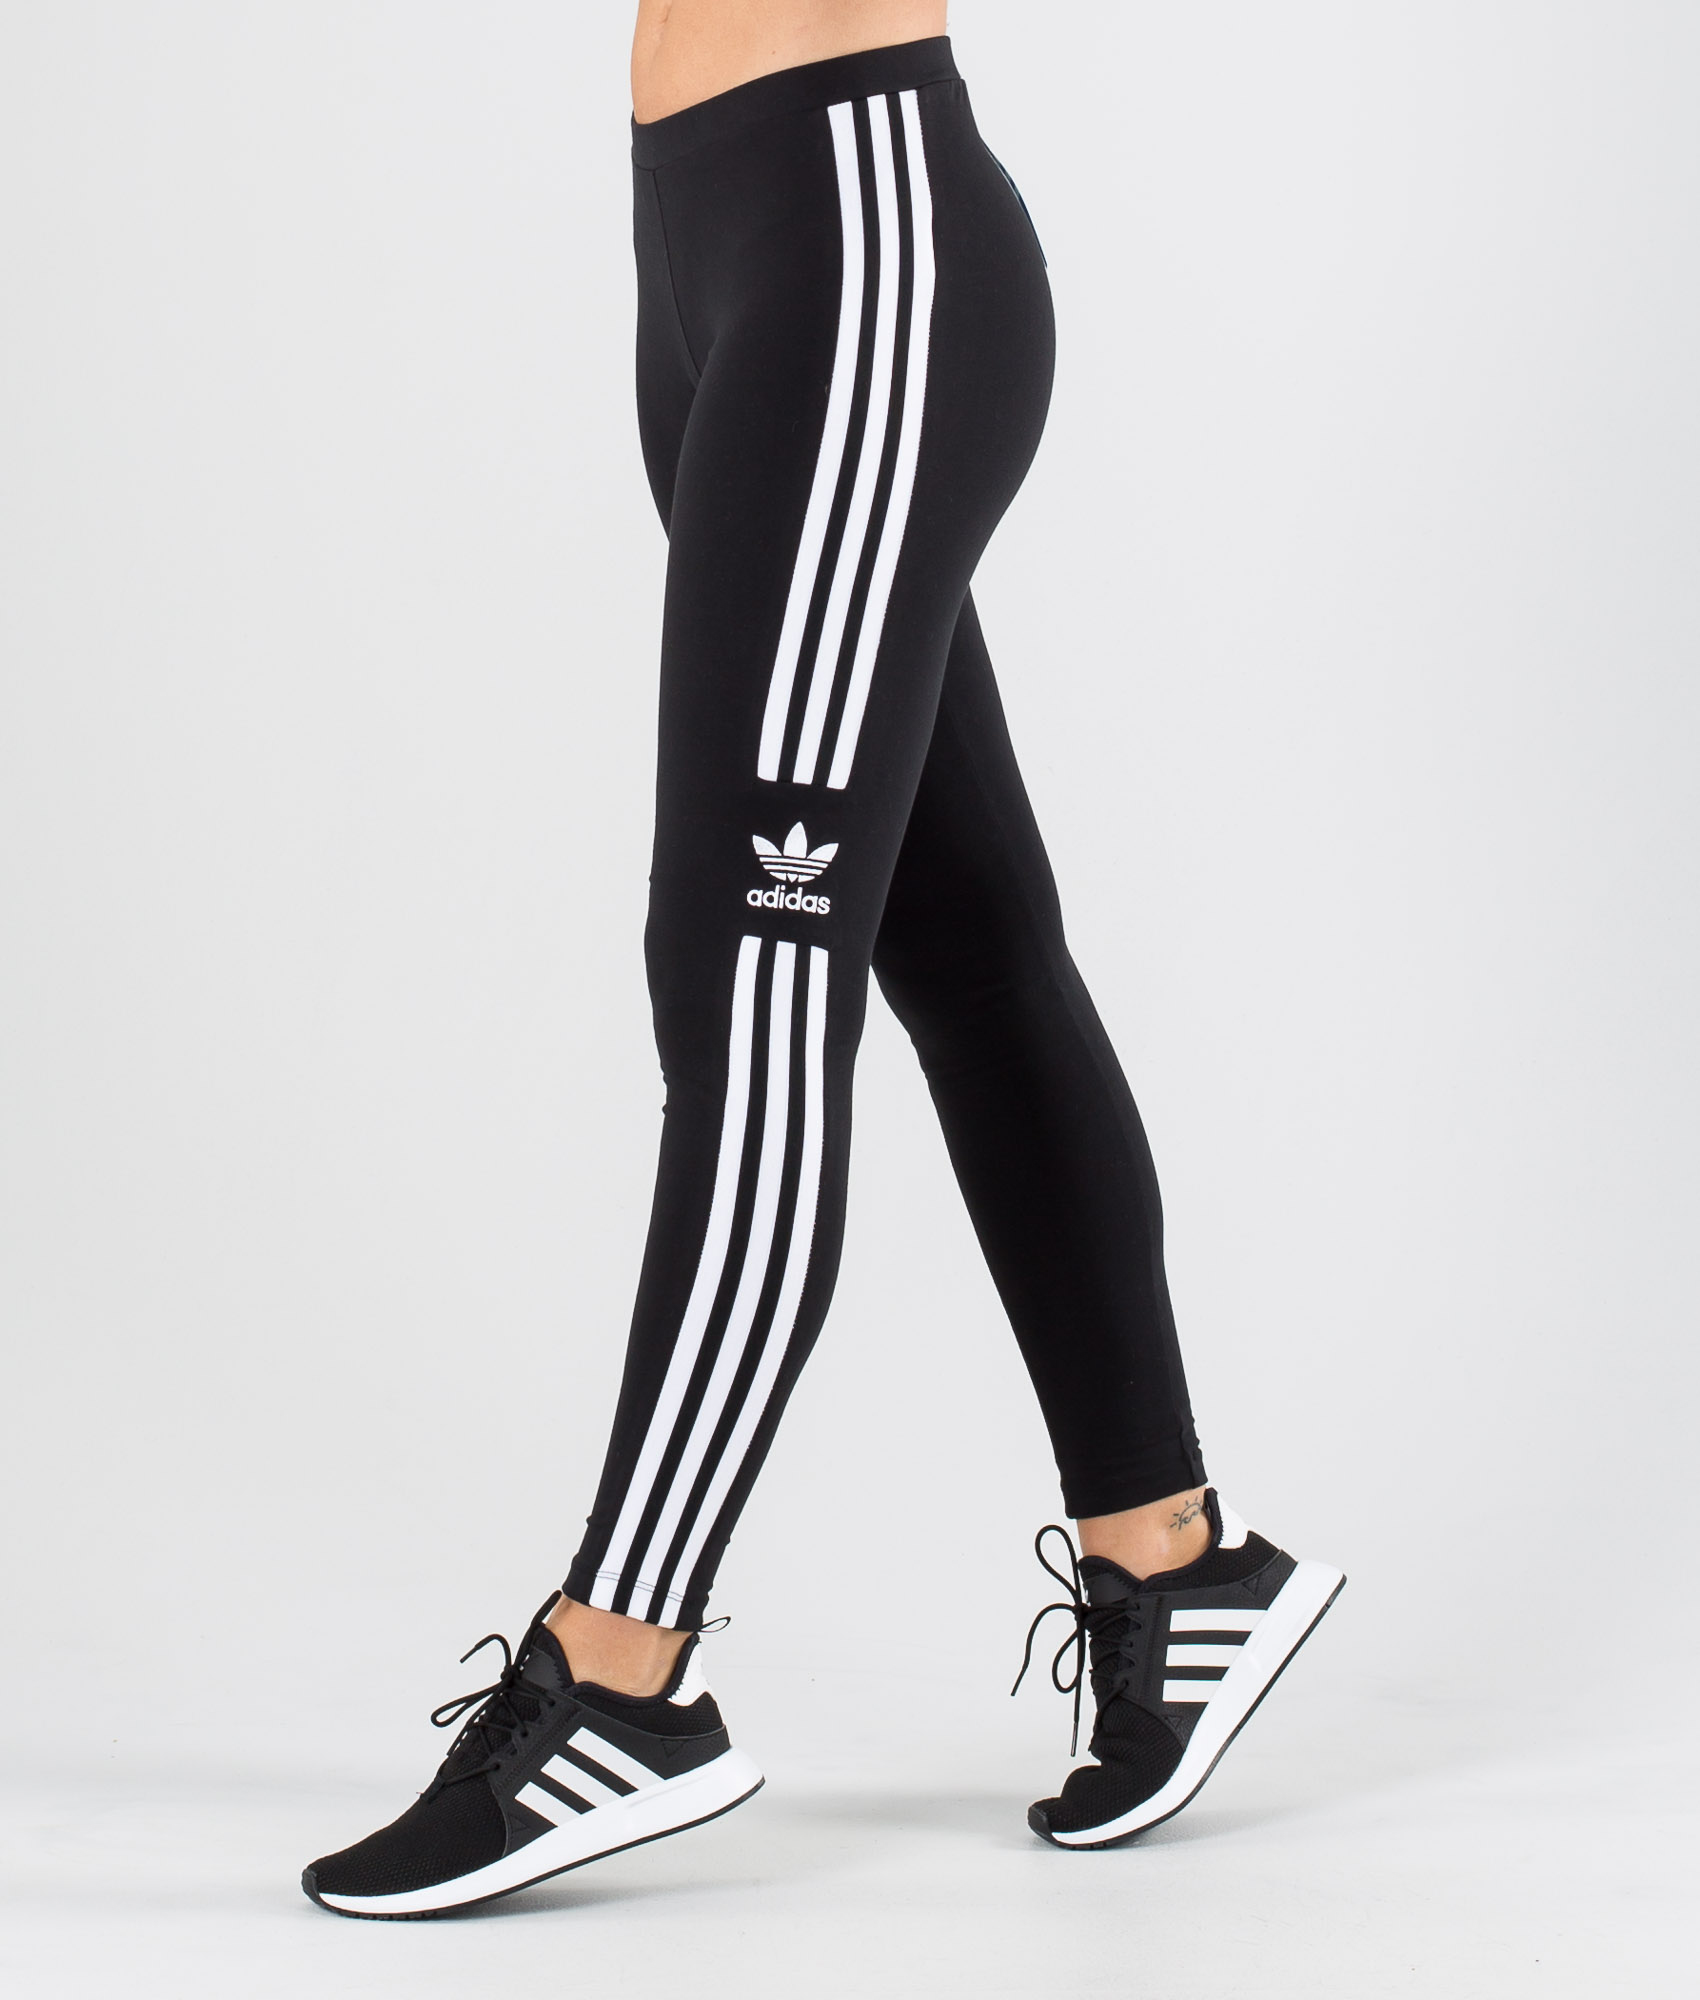 Adidas Originals Trefoil Tight Leggings 